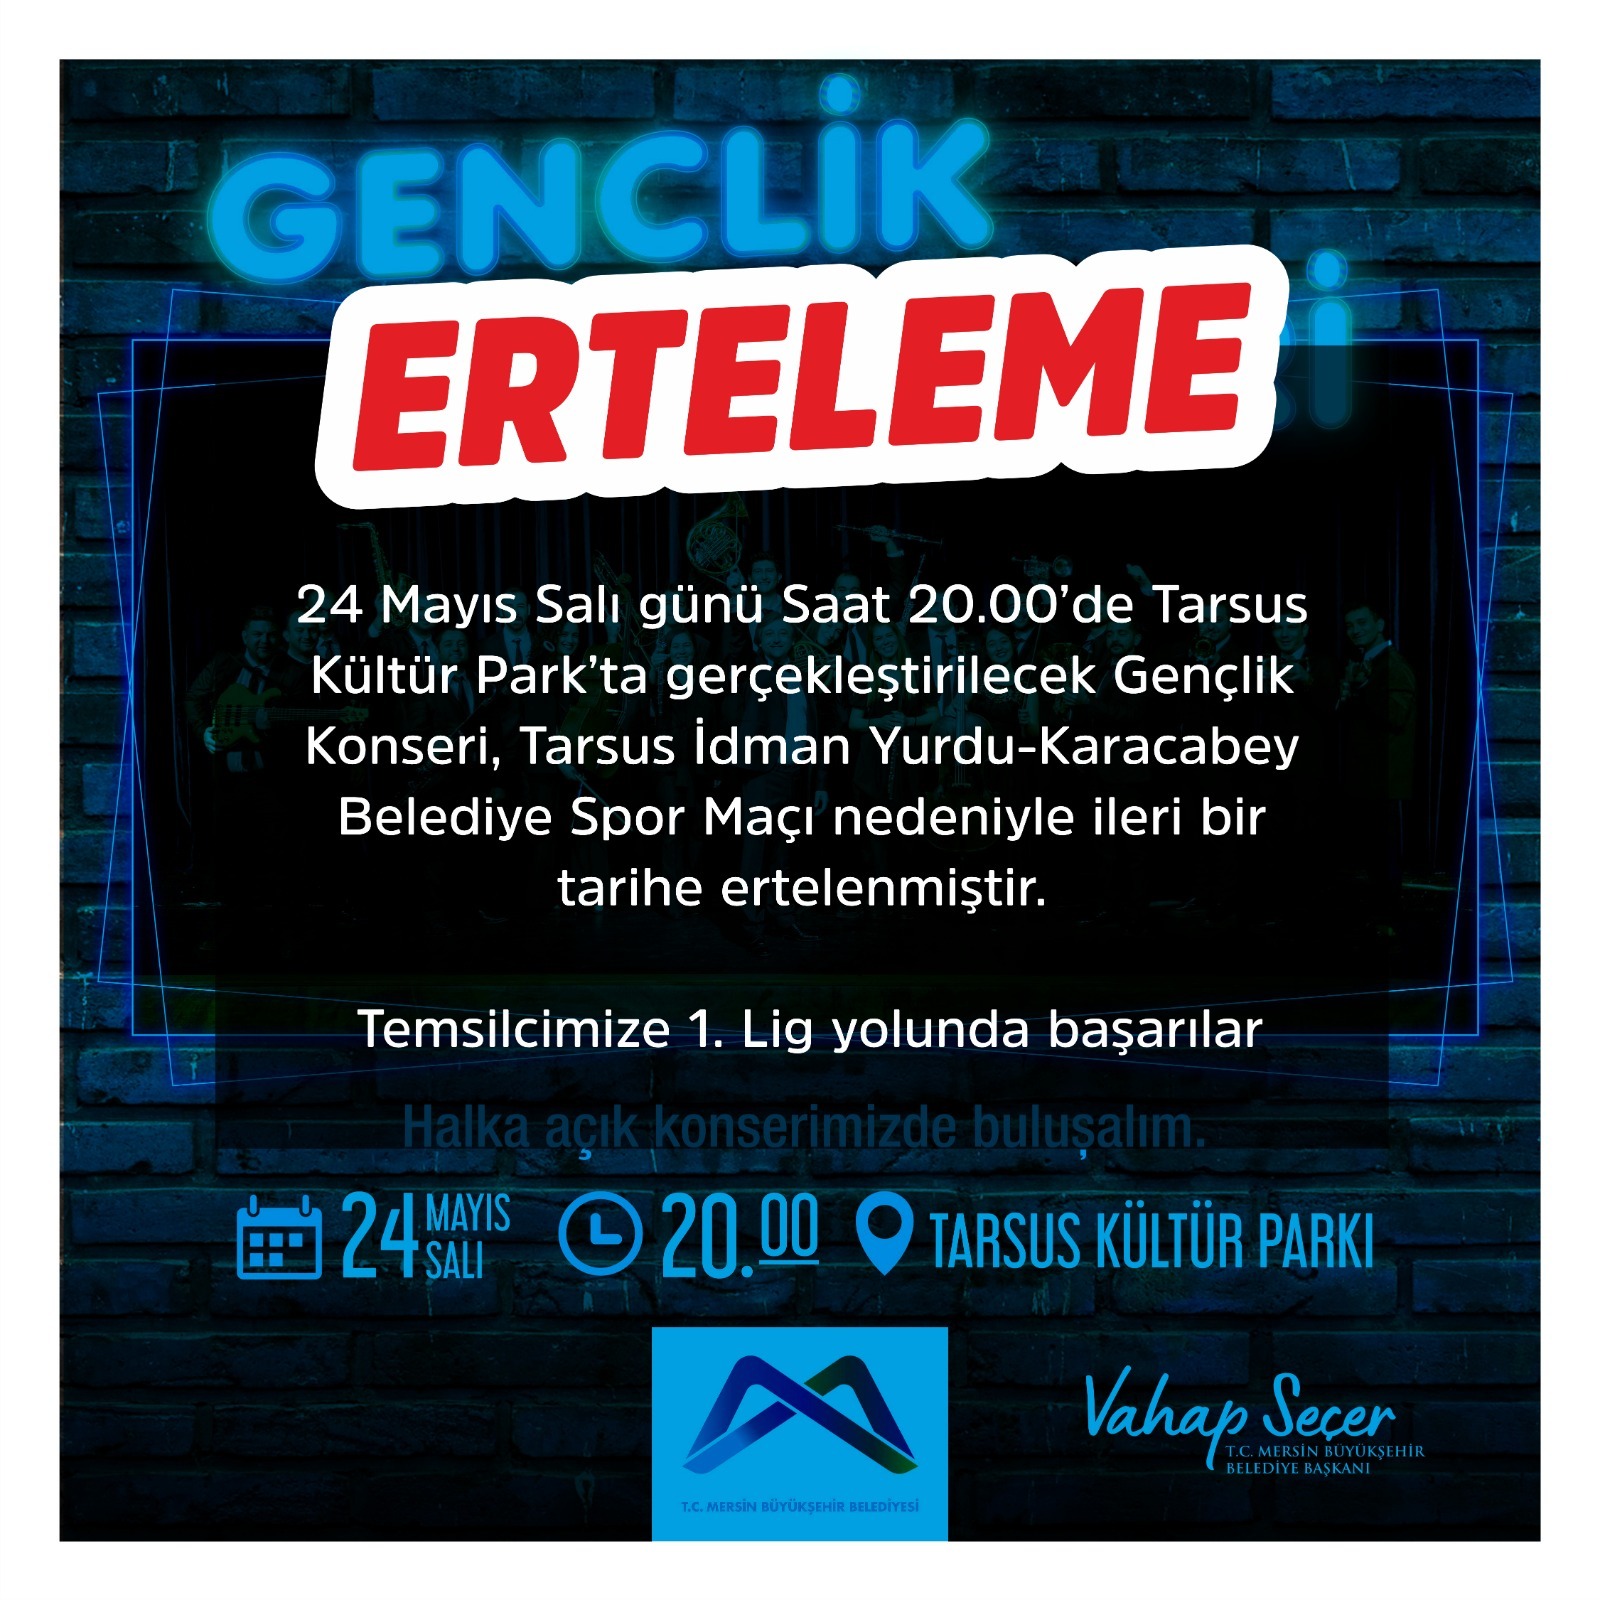 Tarsus İdman Yurdu - Karacabey Belediye Spor maçı